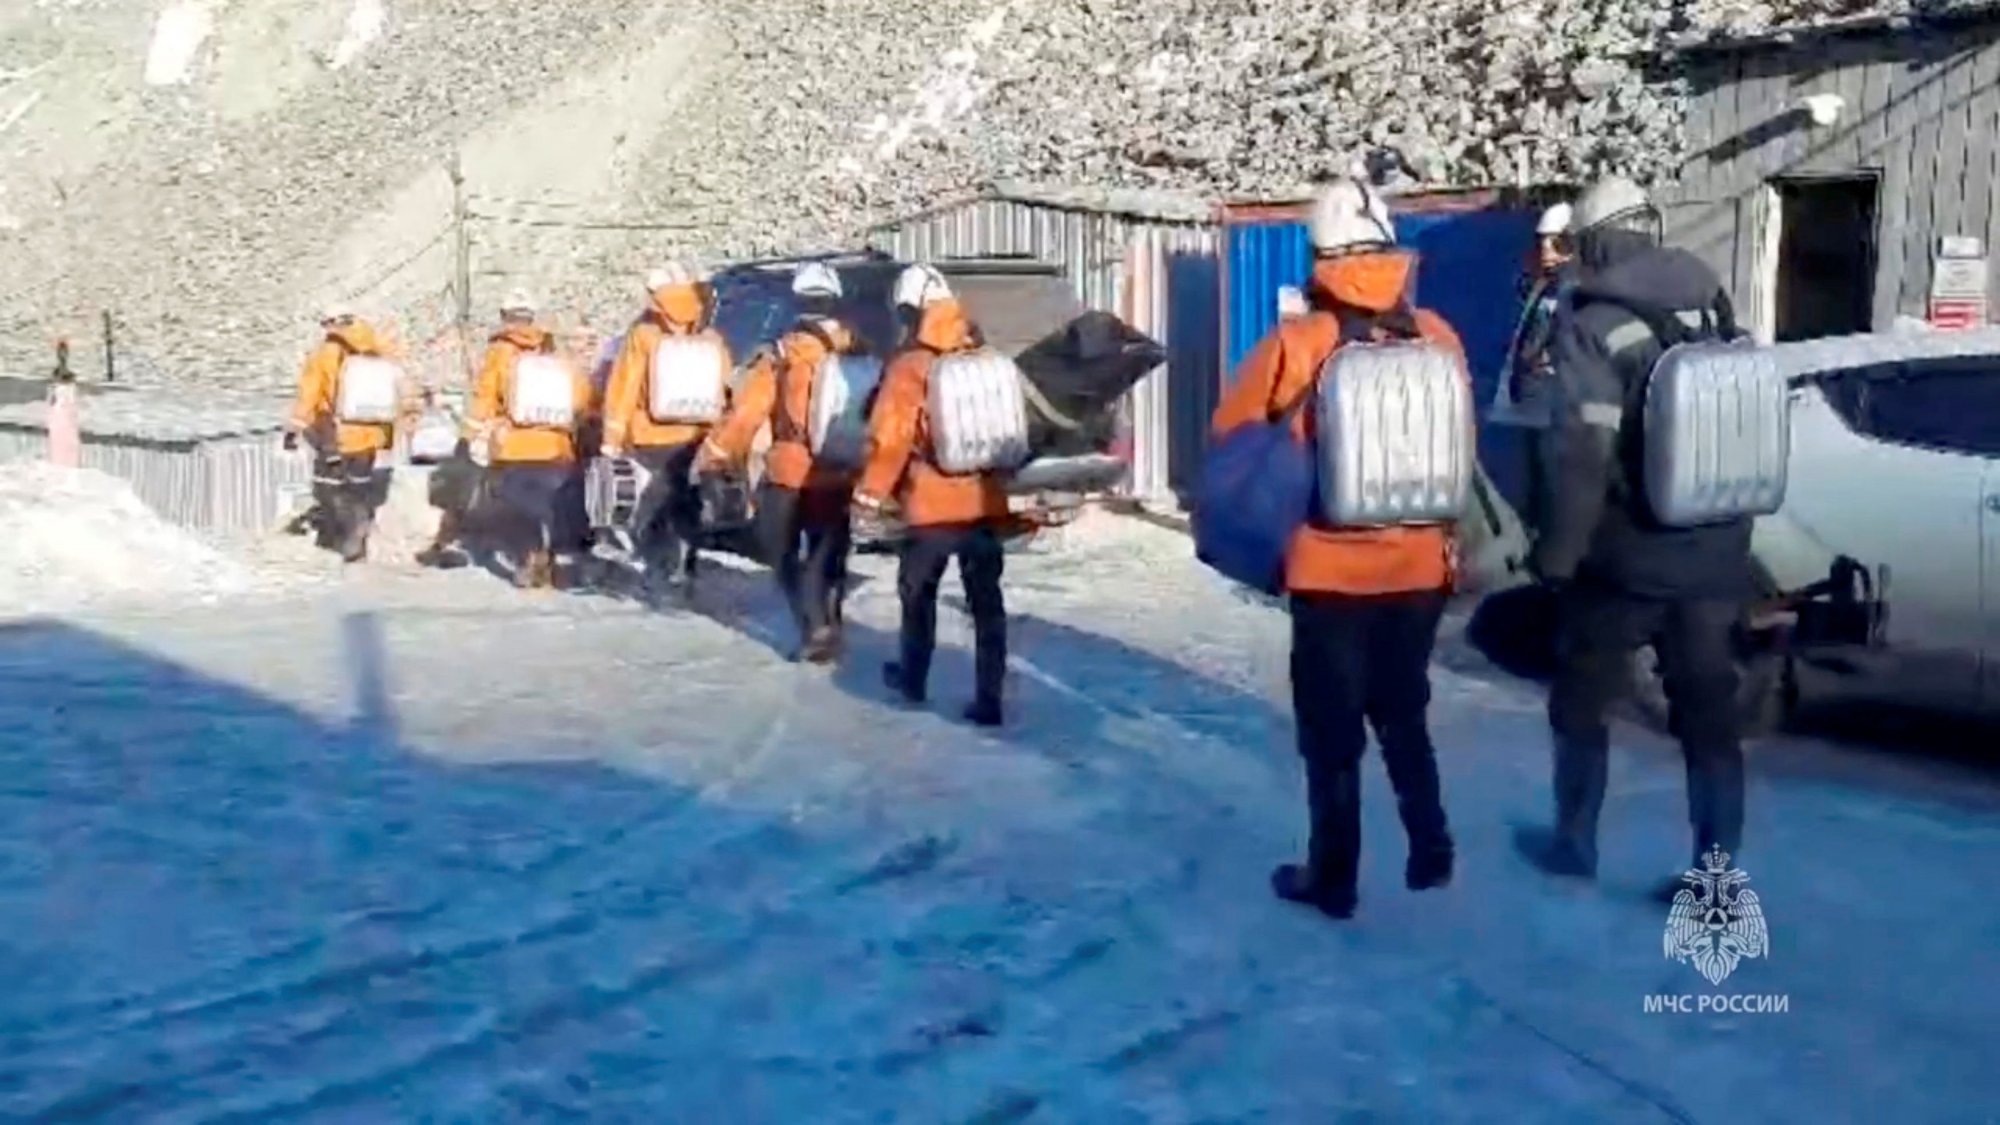 Ρωσία: Αγωνία για τους 13 εργάτες που παραμένουν επί 48 ώρες εγκλωβισμένοι σε χρυσωρυχείο